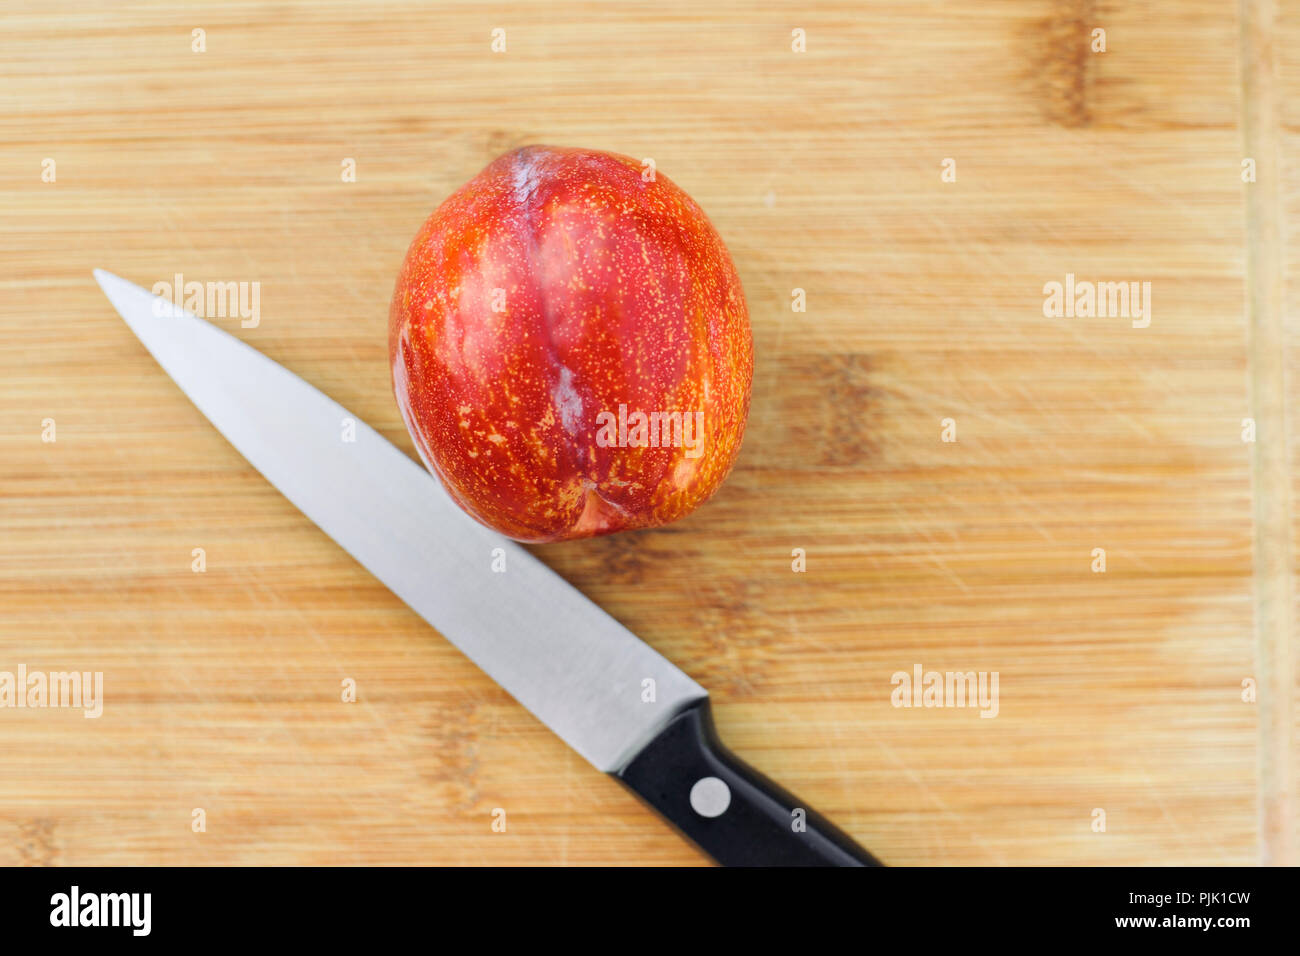 Un coltello fissa accanto a un amigo pluot frutto su un legno tagliere Foto Stock